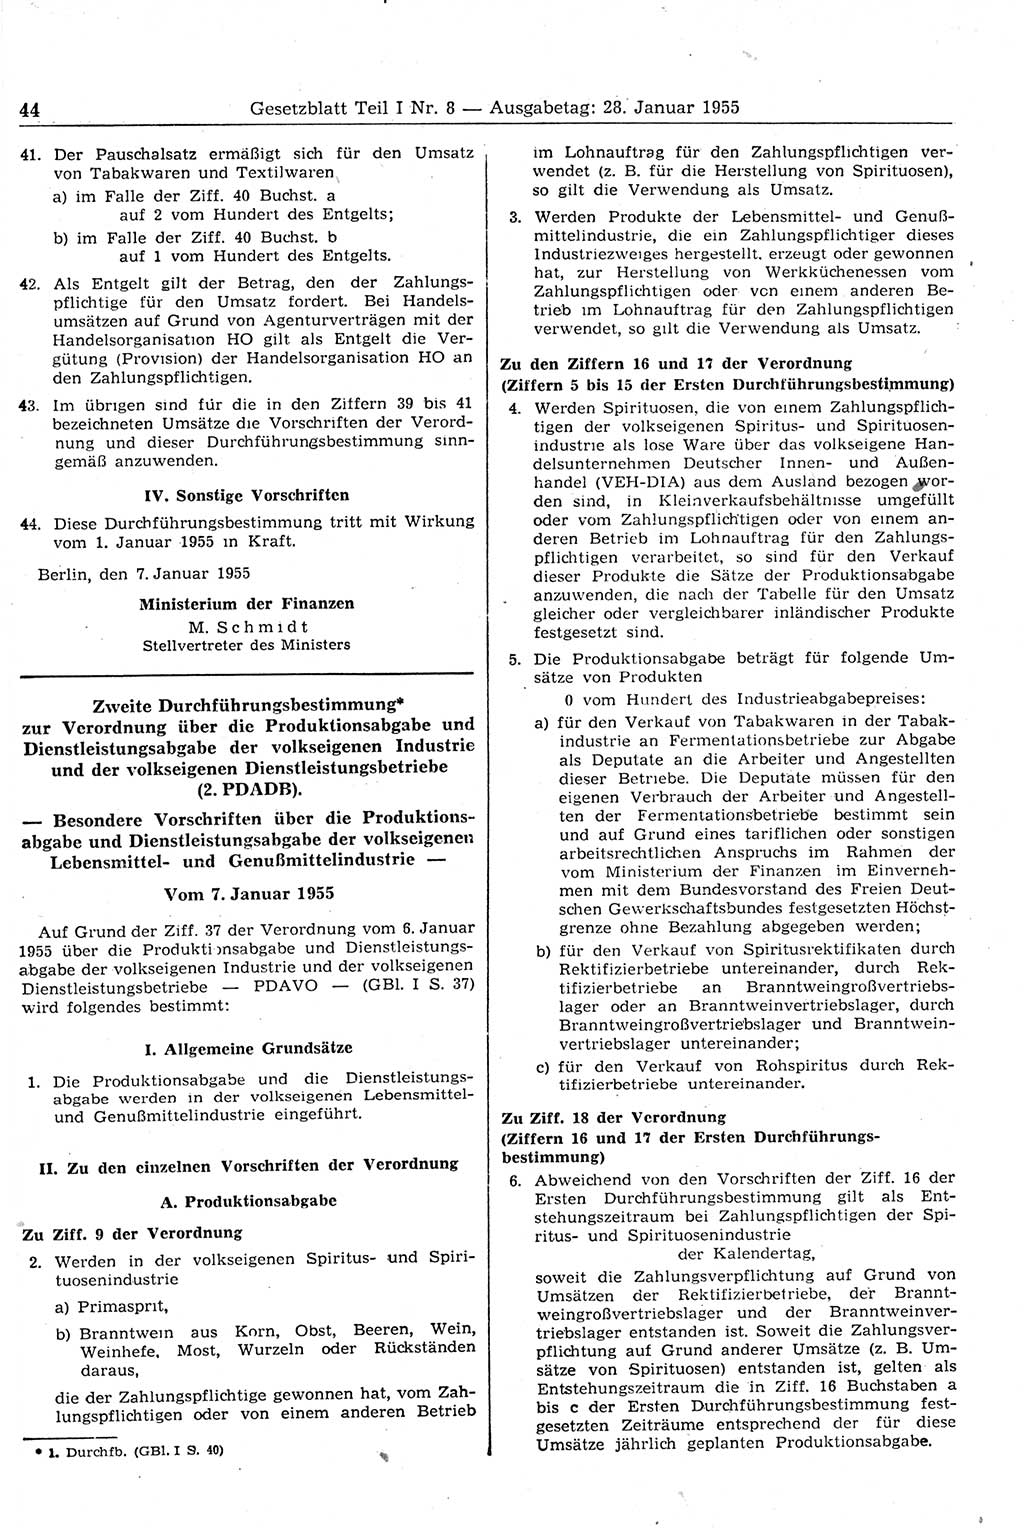 Gesetzblatt (GBl.) der Deutschen Demokratischen Republik (DDR) Teil Ⅰ 1955, Seite 44 (GBl. DDR Ⅰ 1955, S. 44)